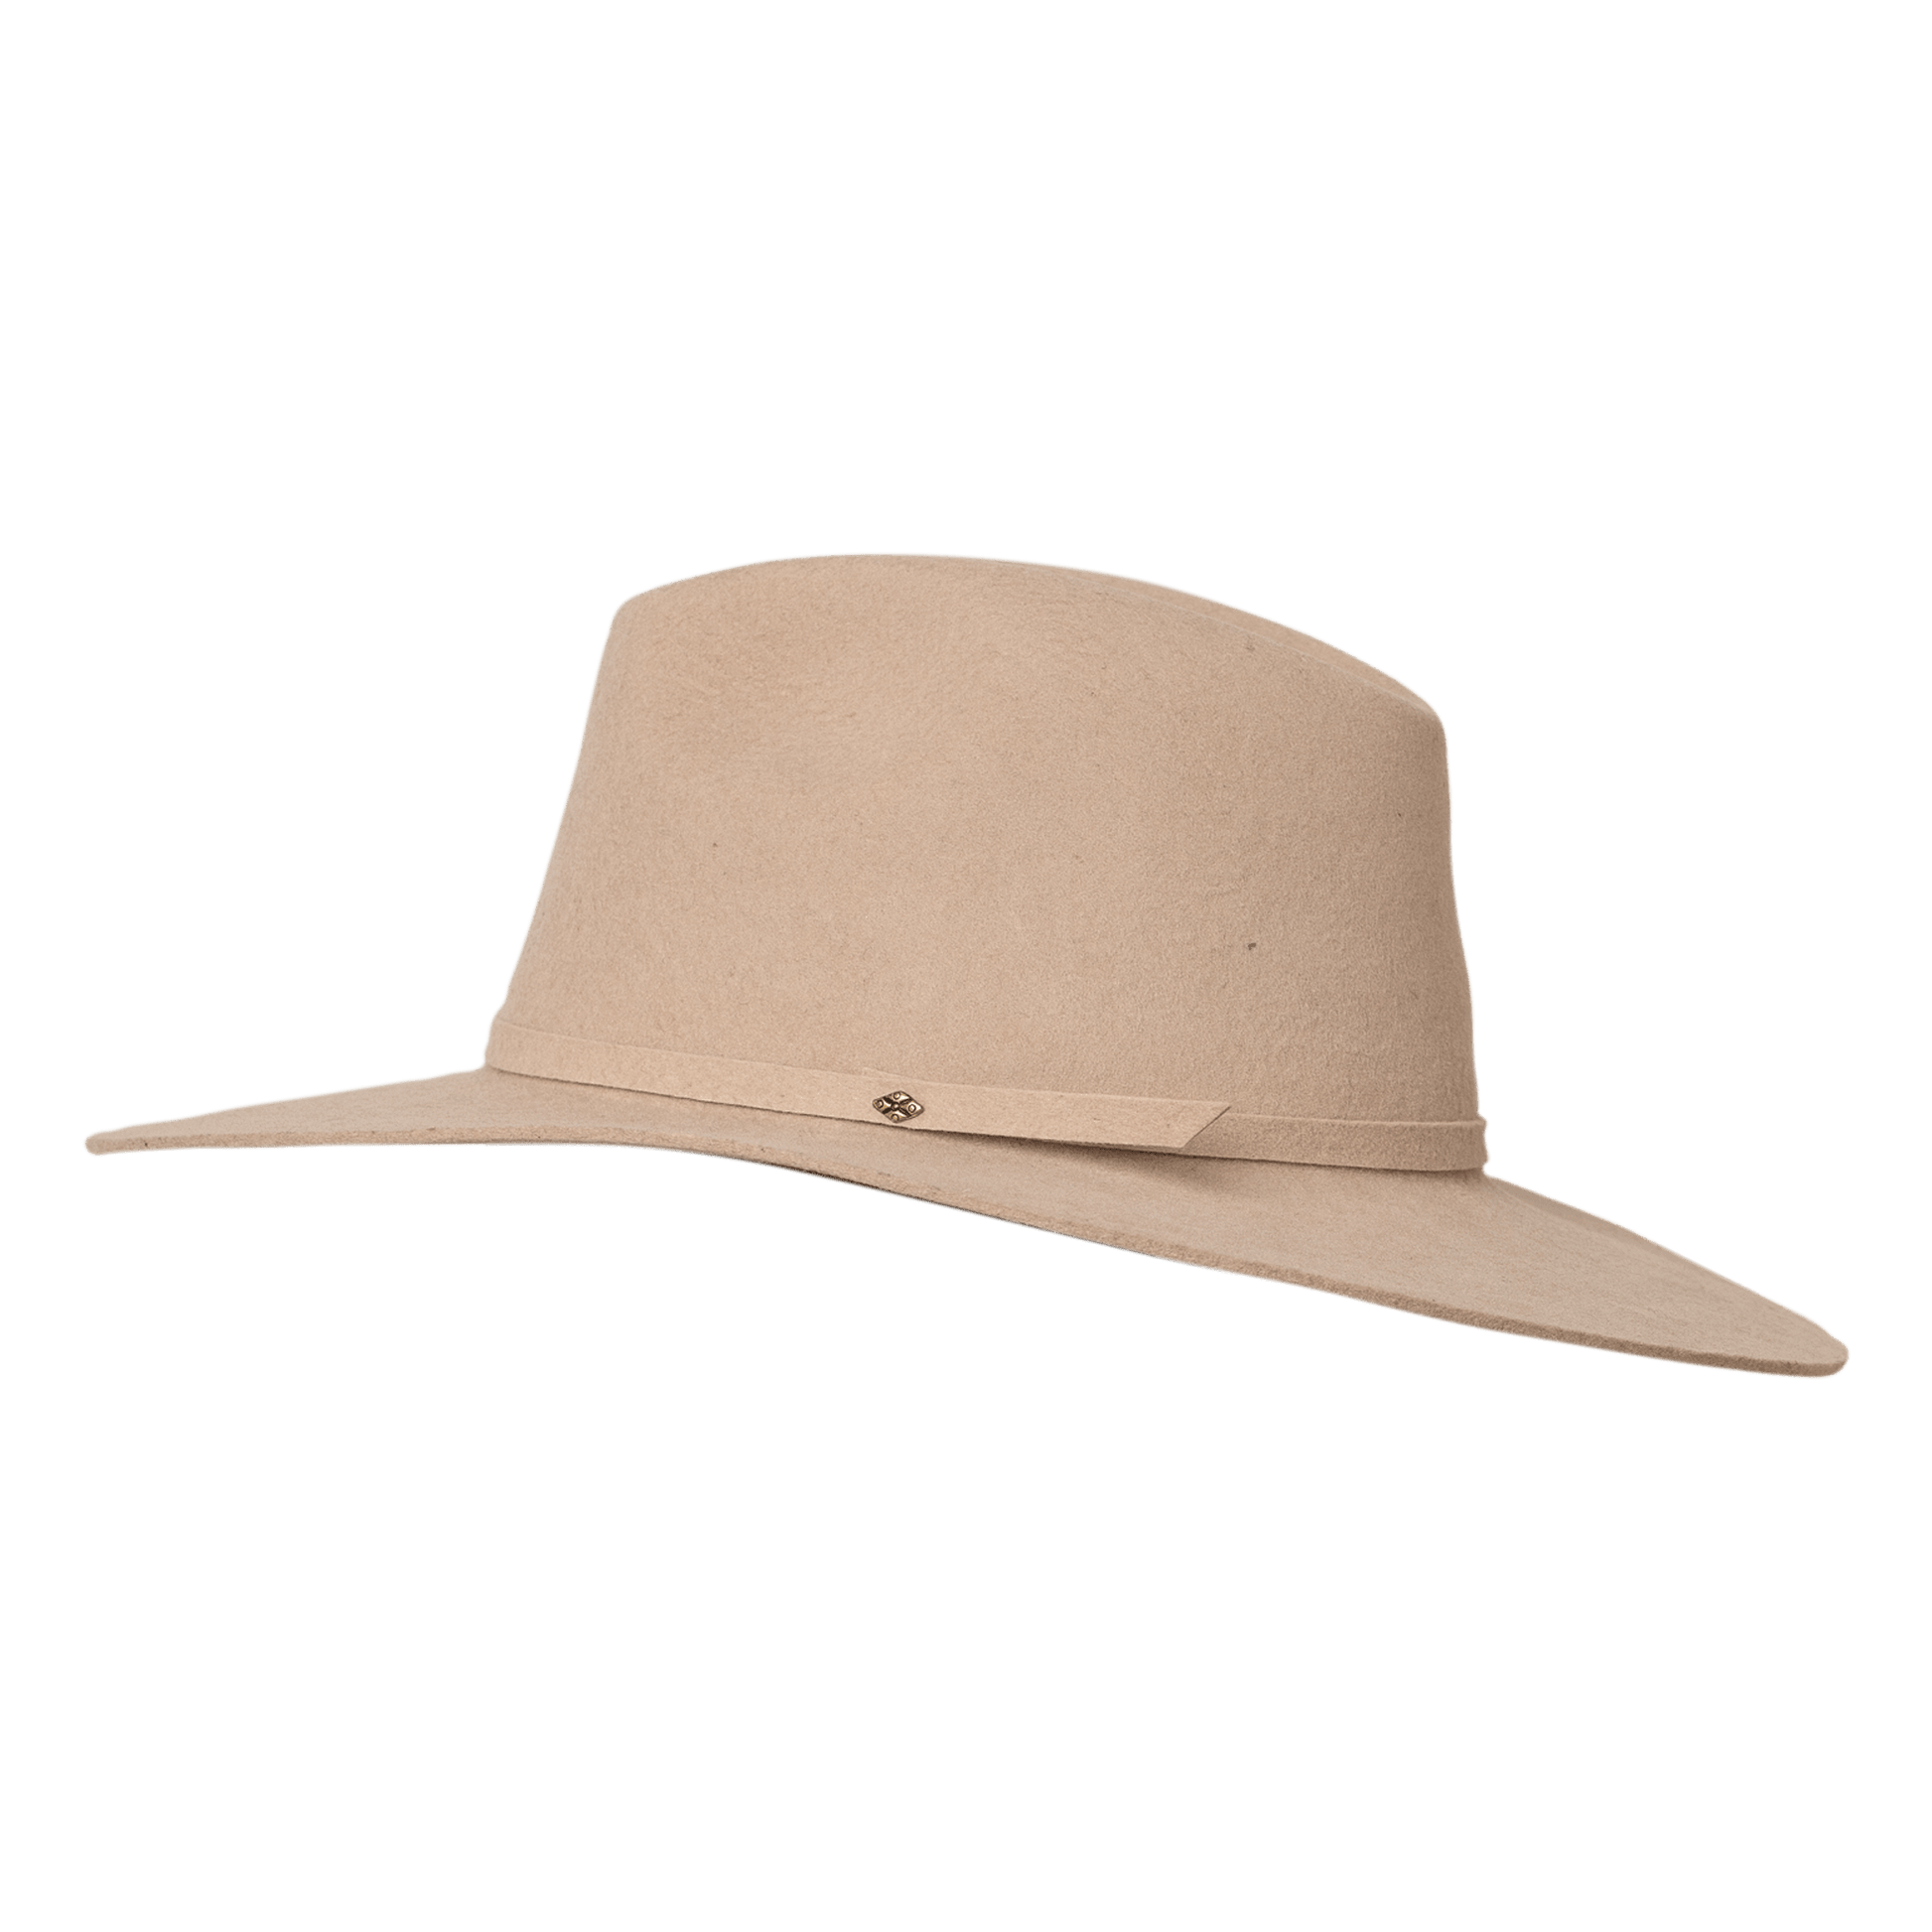 Sombrero-fieltro-habano-fedora-vista-lateral